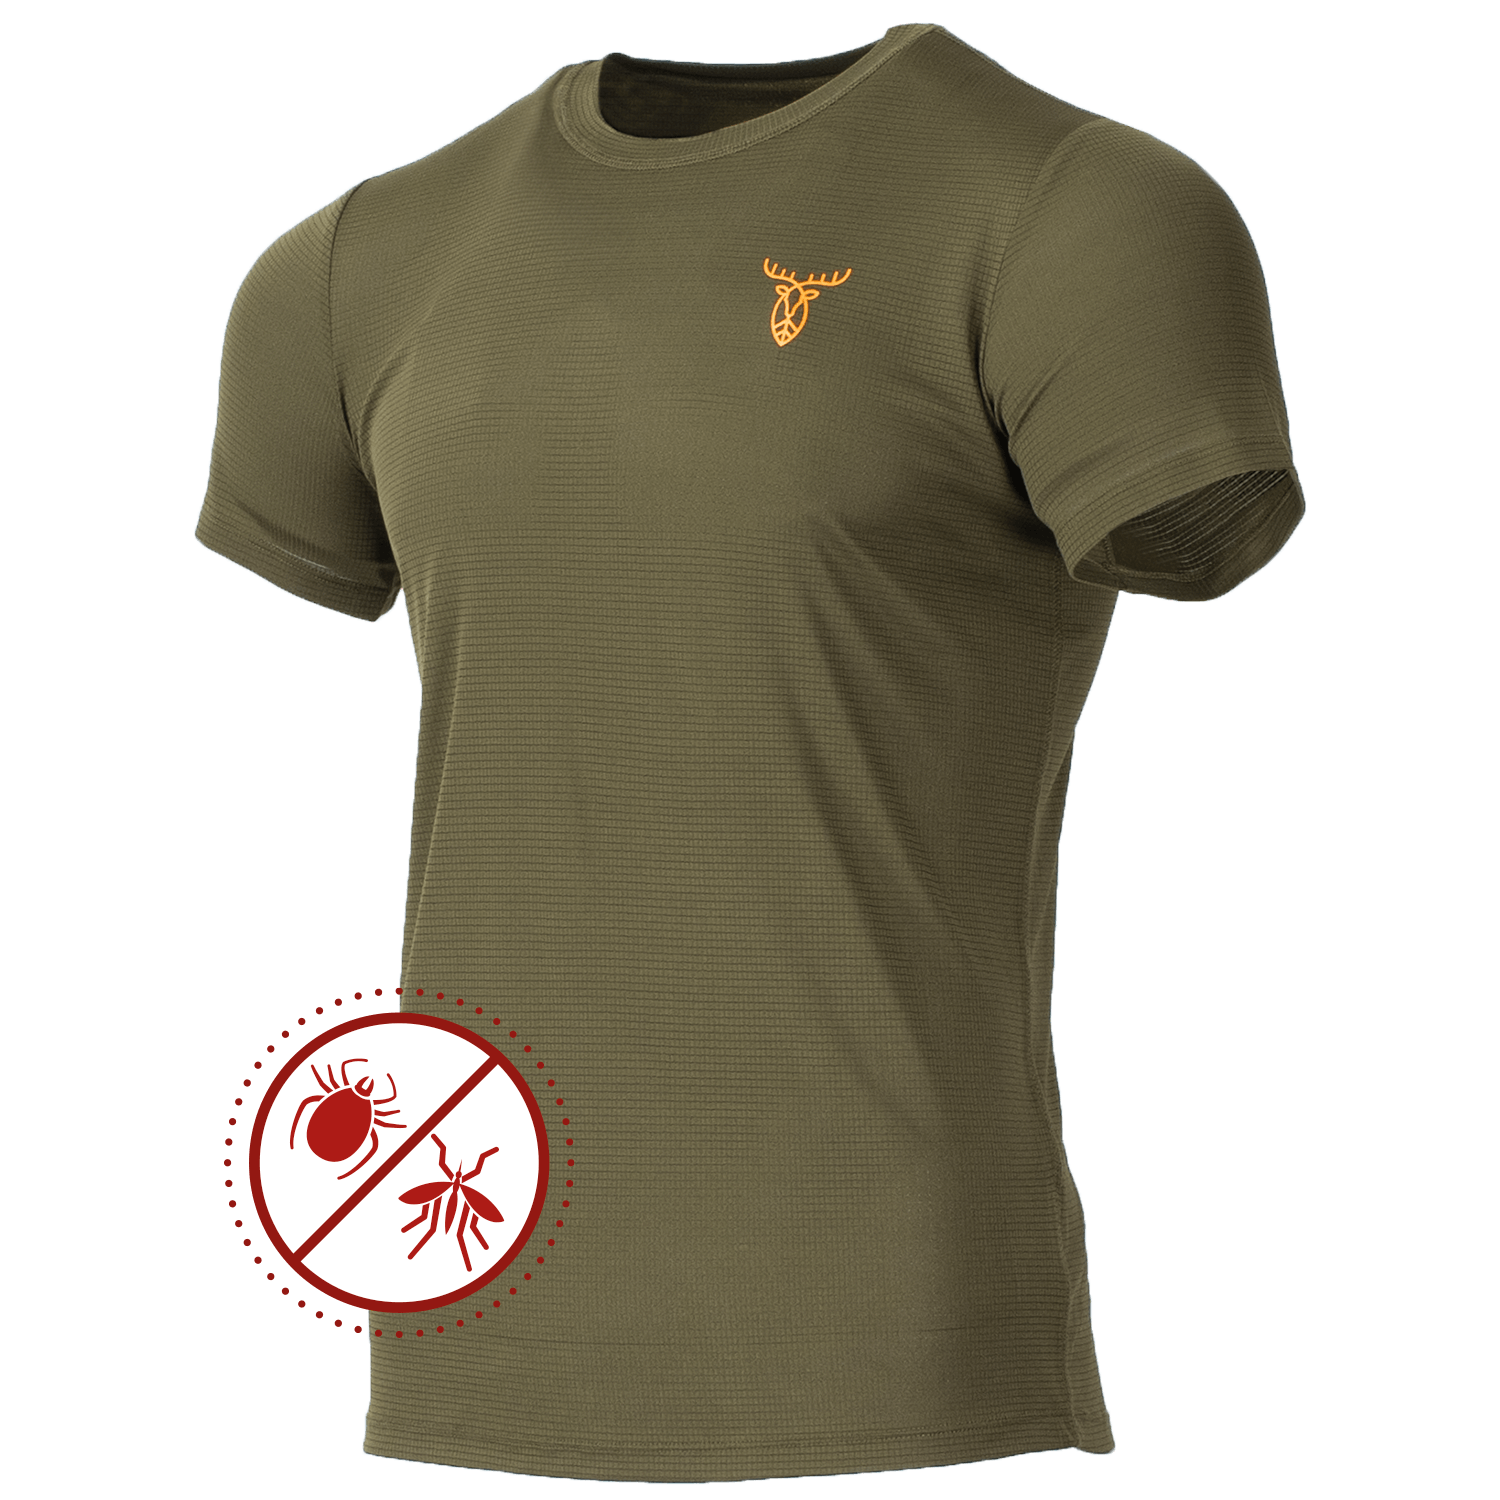  Pirscher Gear Ultralicht Tanatex T-shirt - Insecten- & tekenbescherming